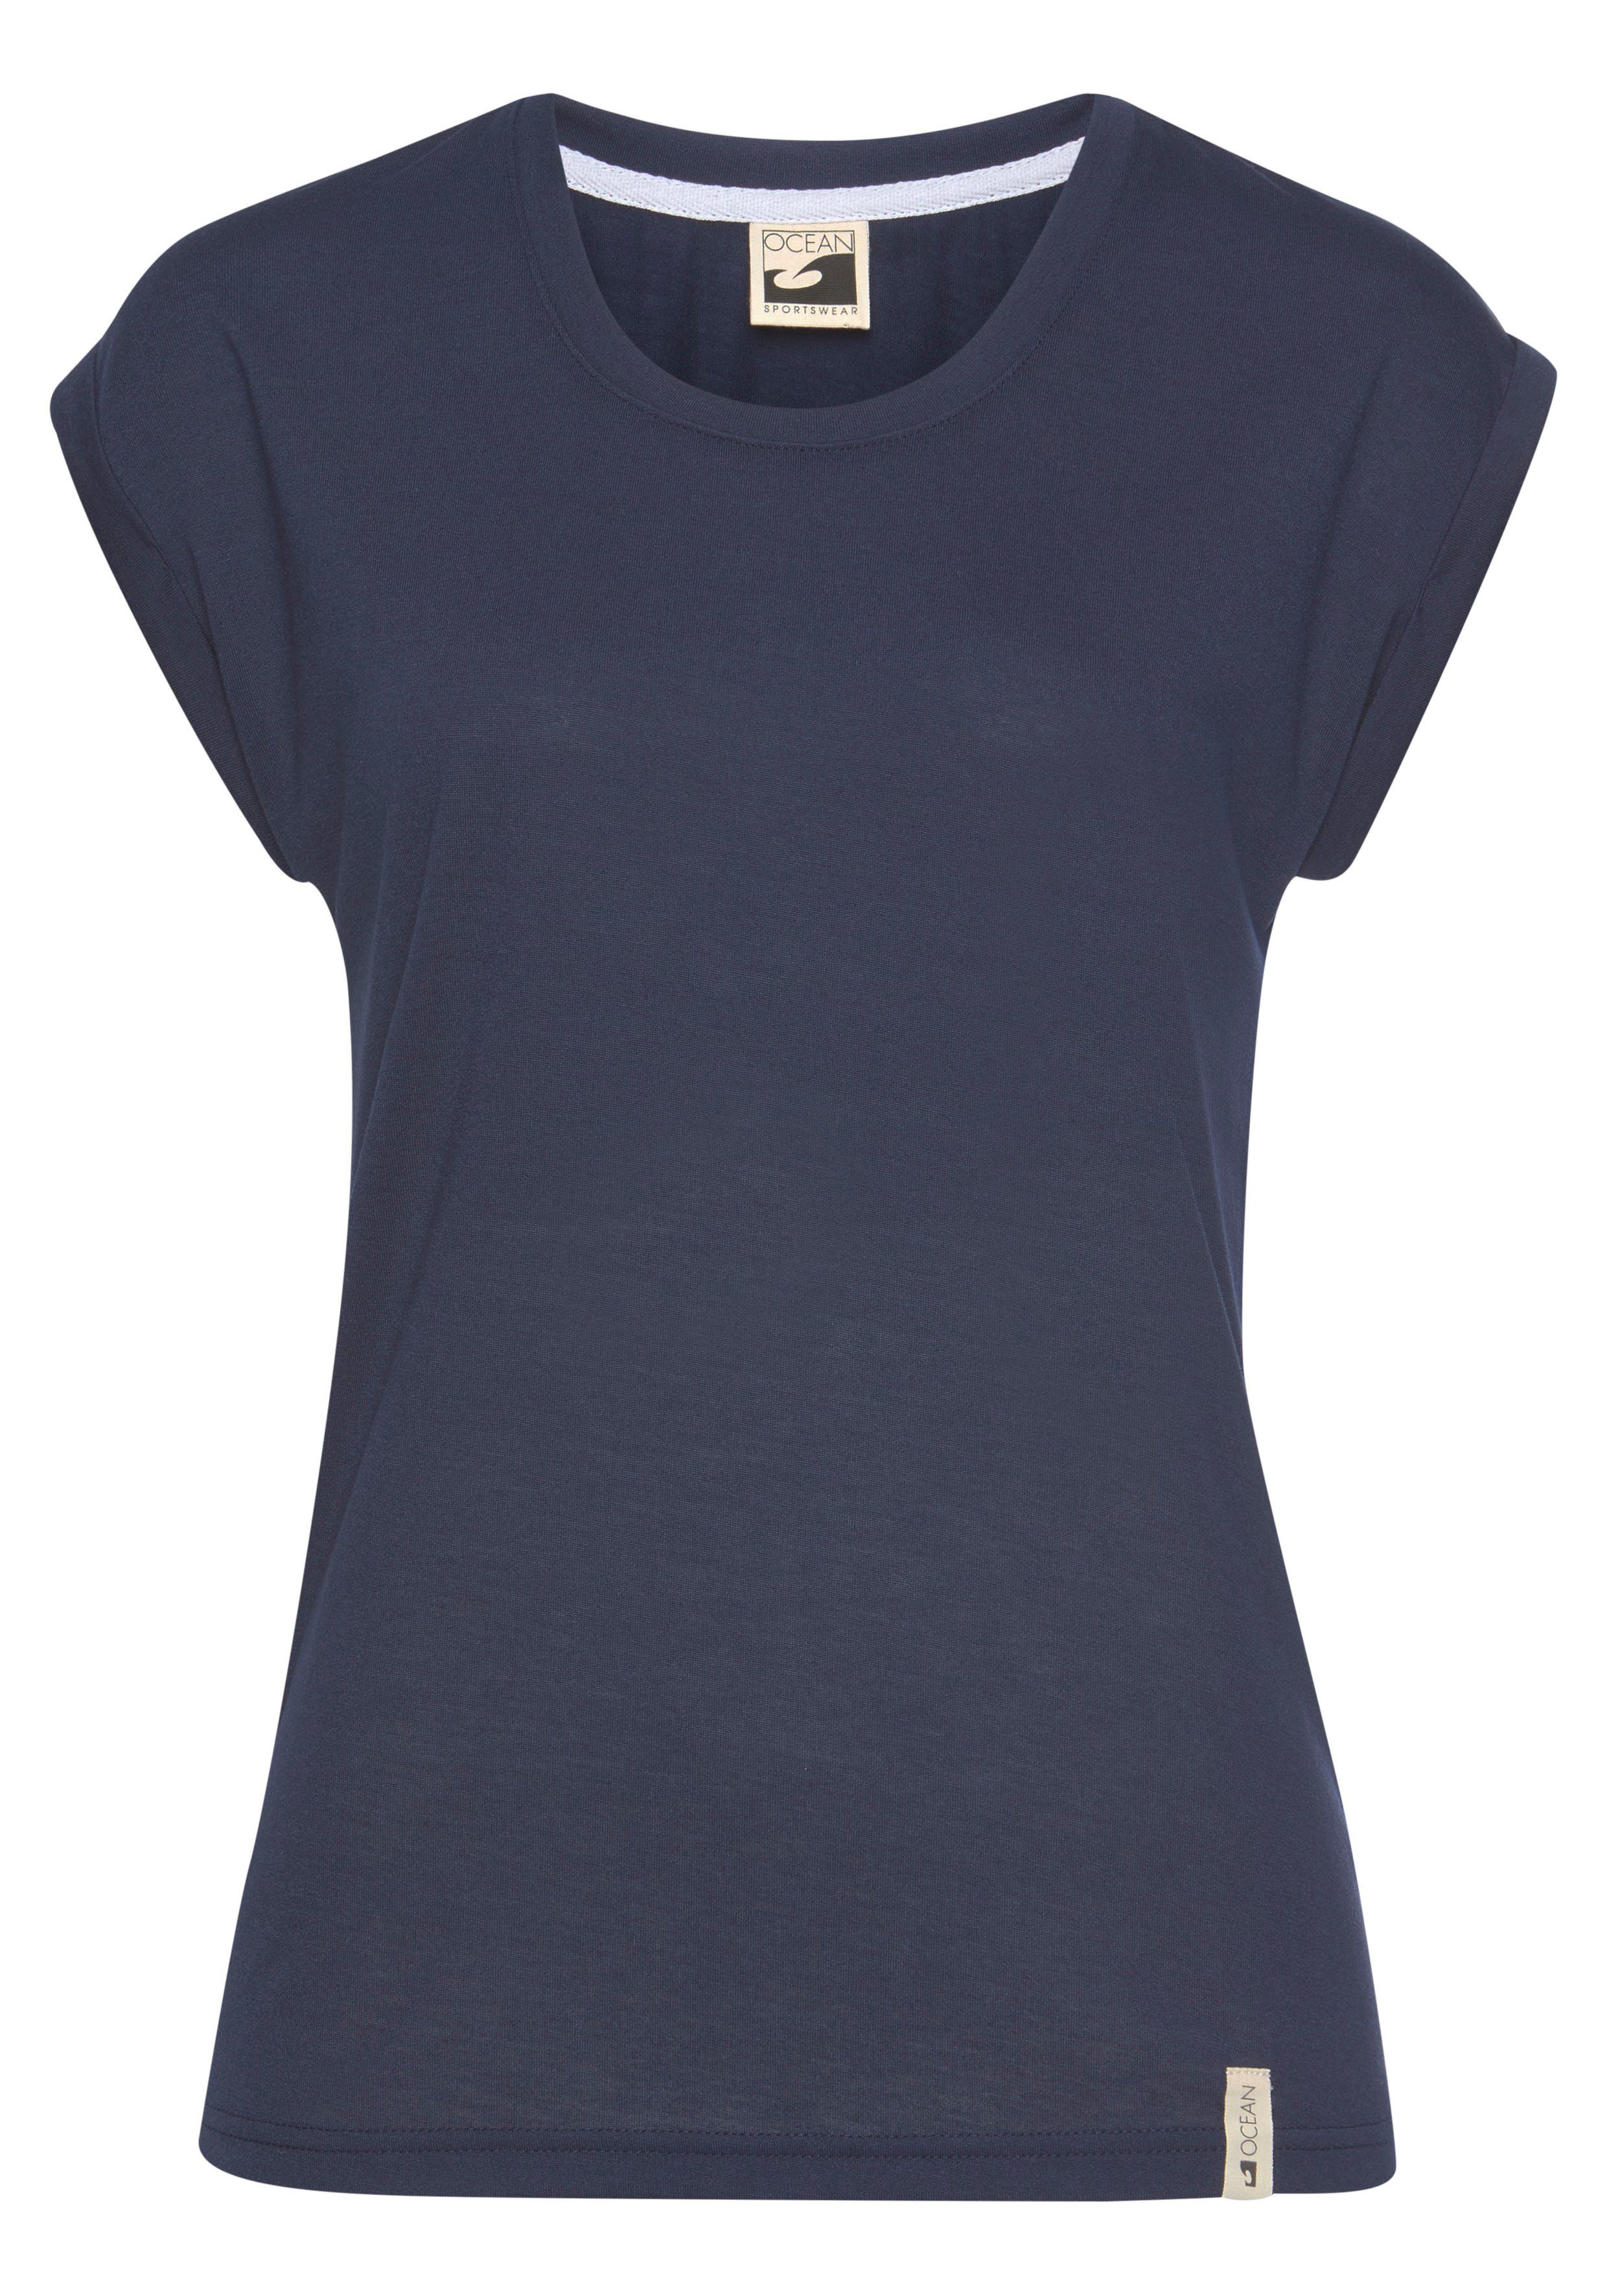 in 2er-Pack) T-Shirt Navy Ocean weiß Sportswear Viskose-Qualität (Packung,